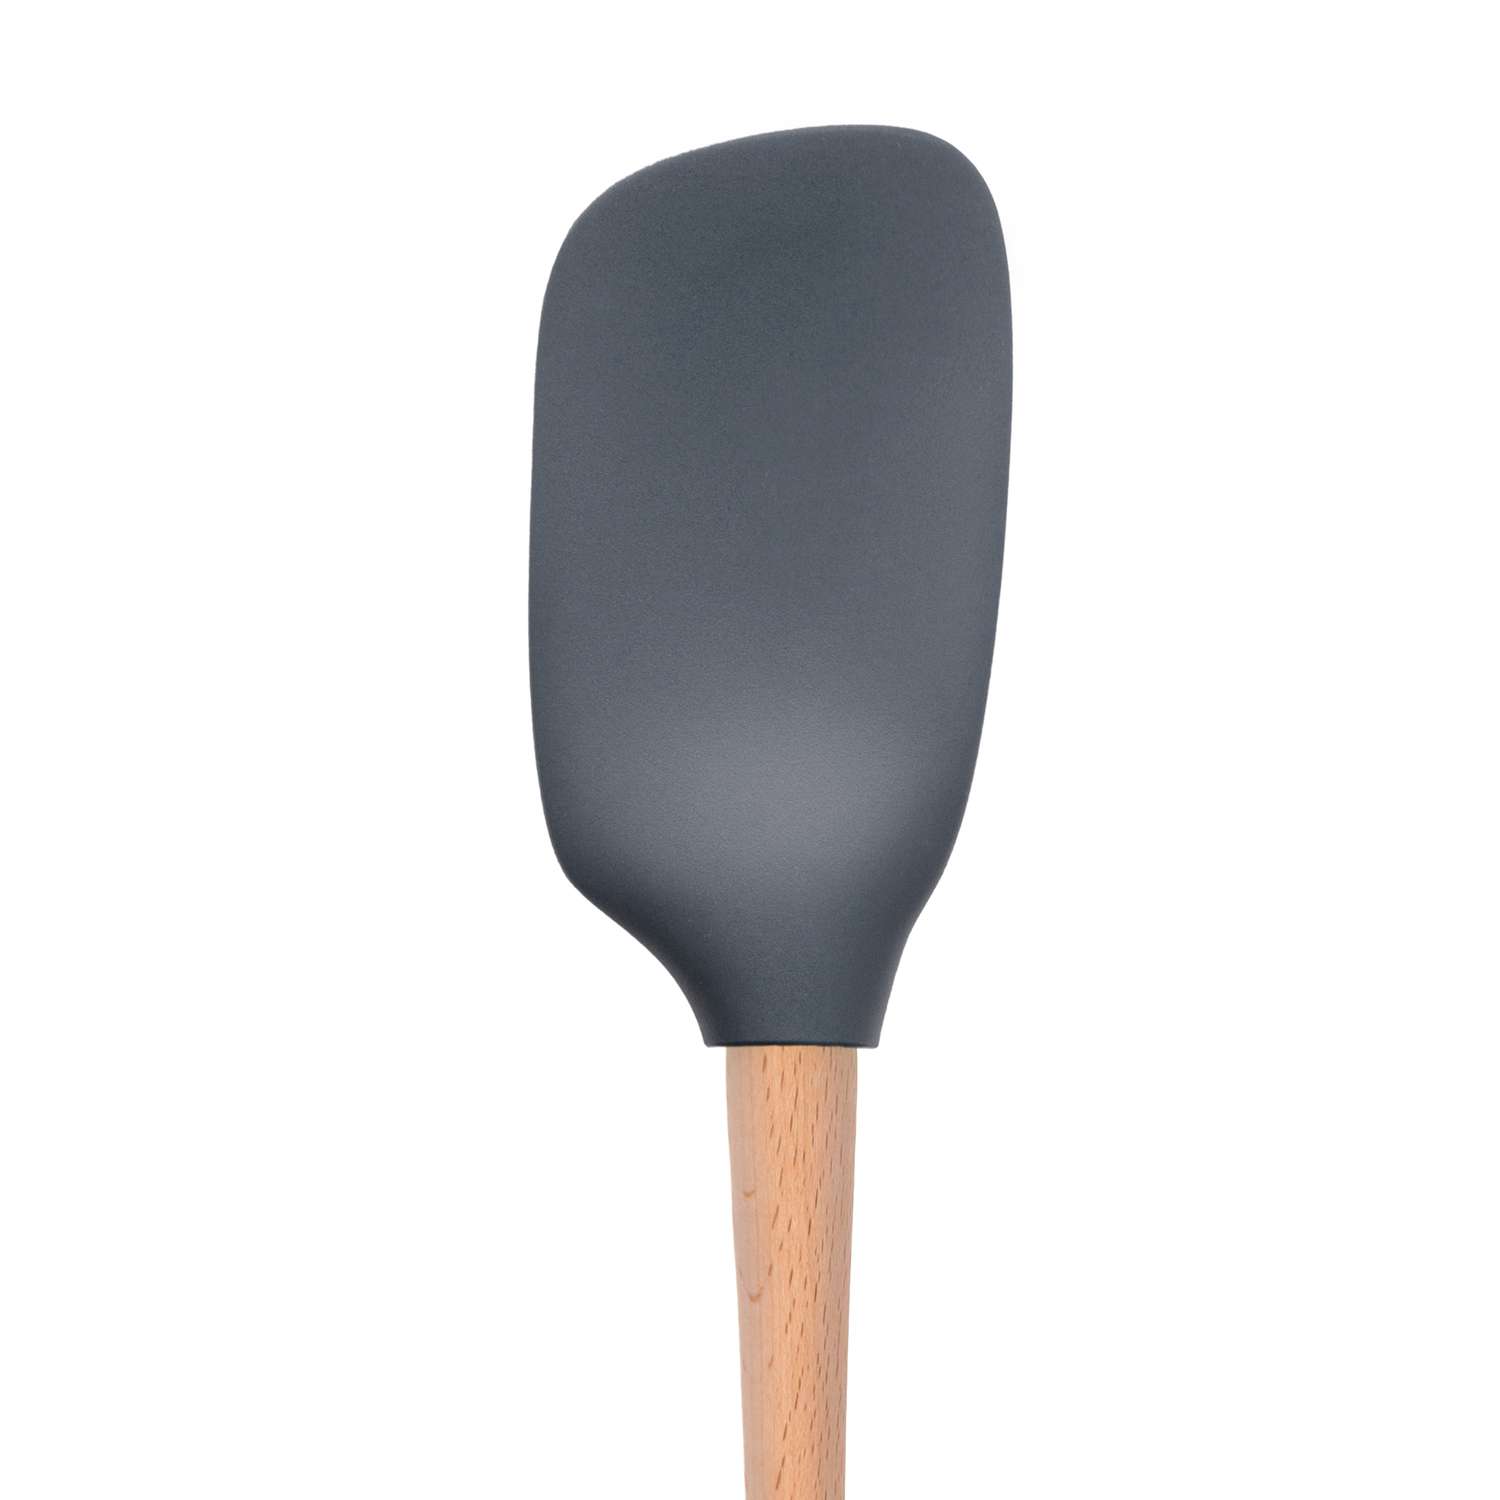 Tovolo Flex-Core Mini Spatula & Spoonula Wood Handle